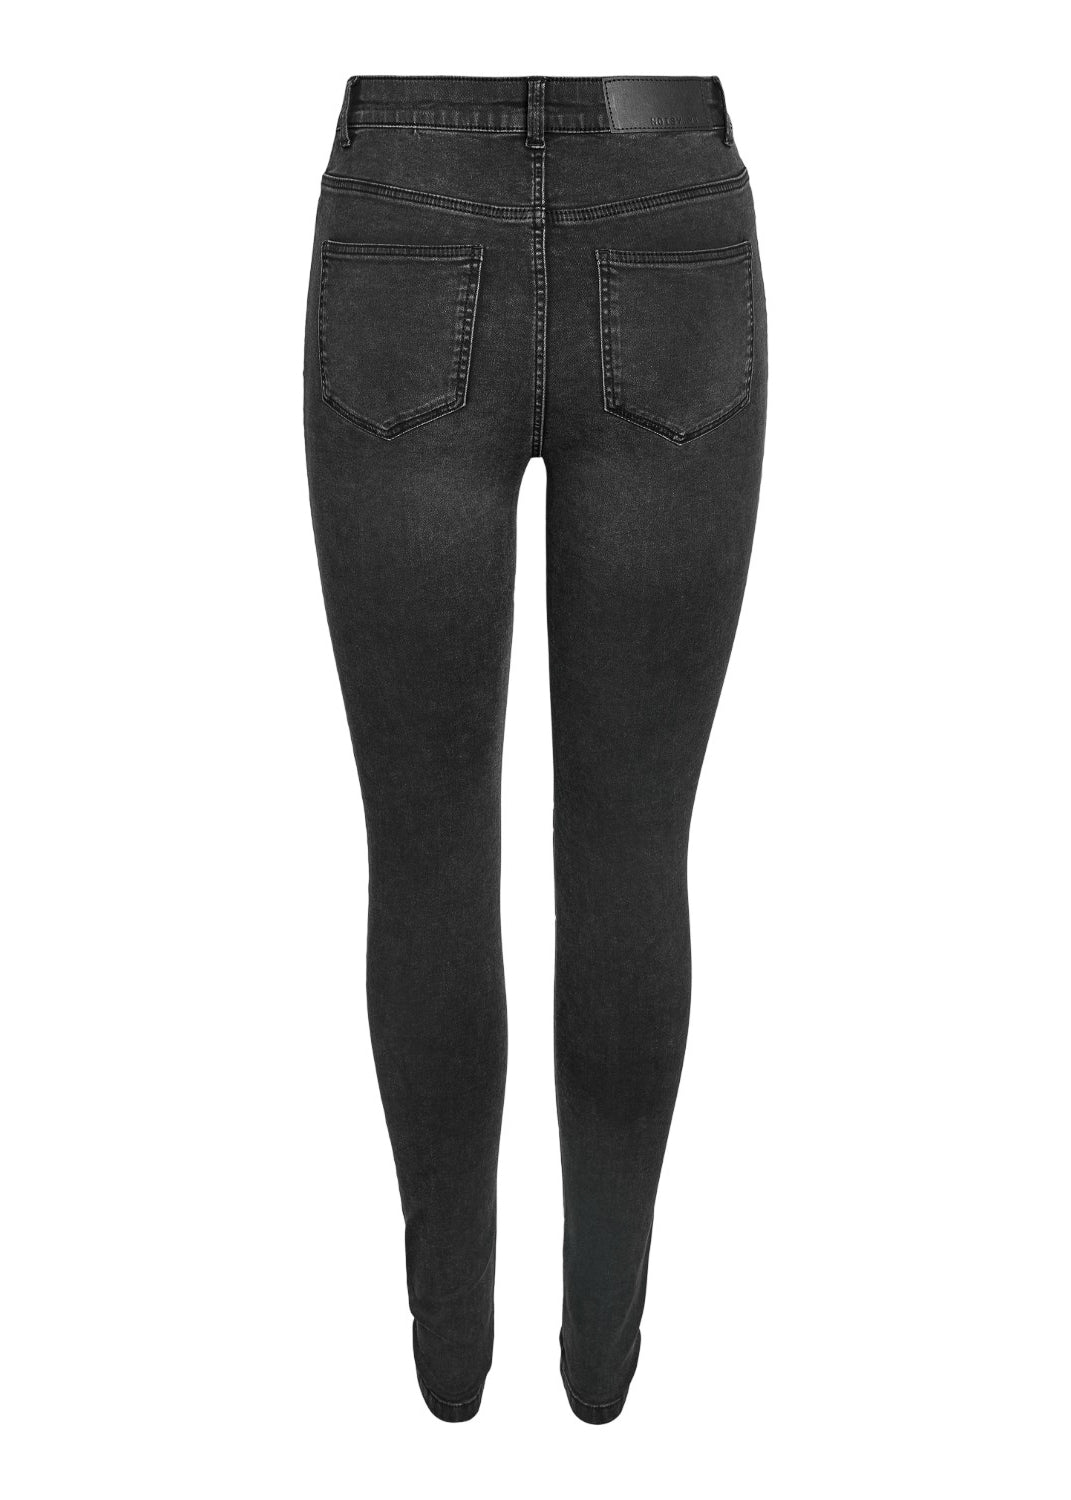 Callie Skinny Jeans - Washed Black - for kvinde - NOISY MAY - Jeans